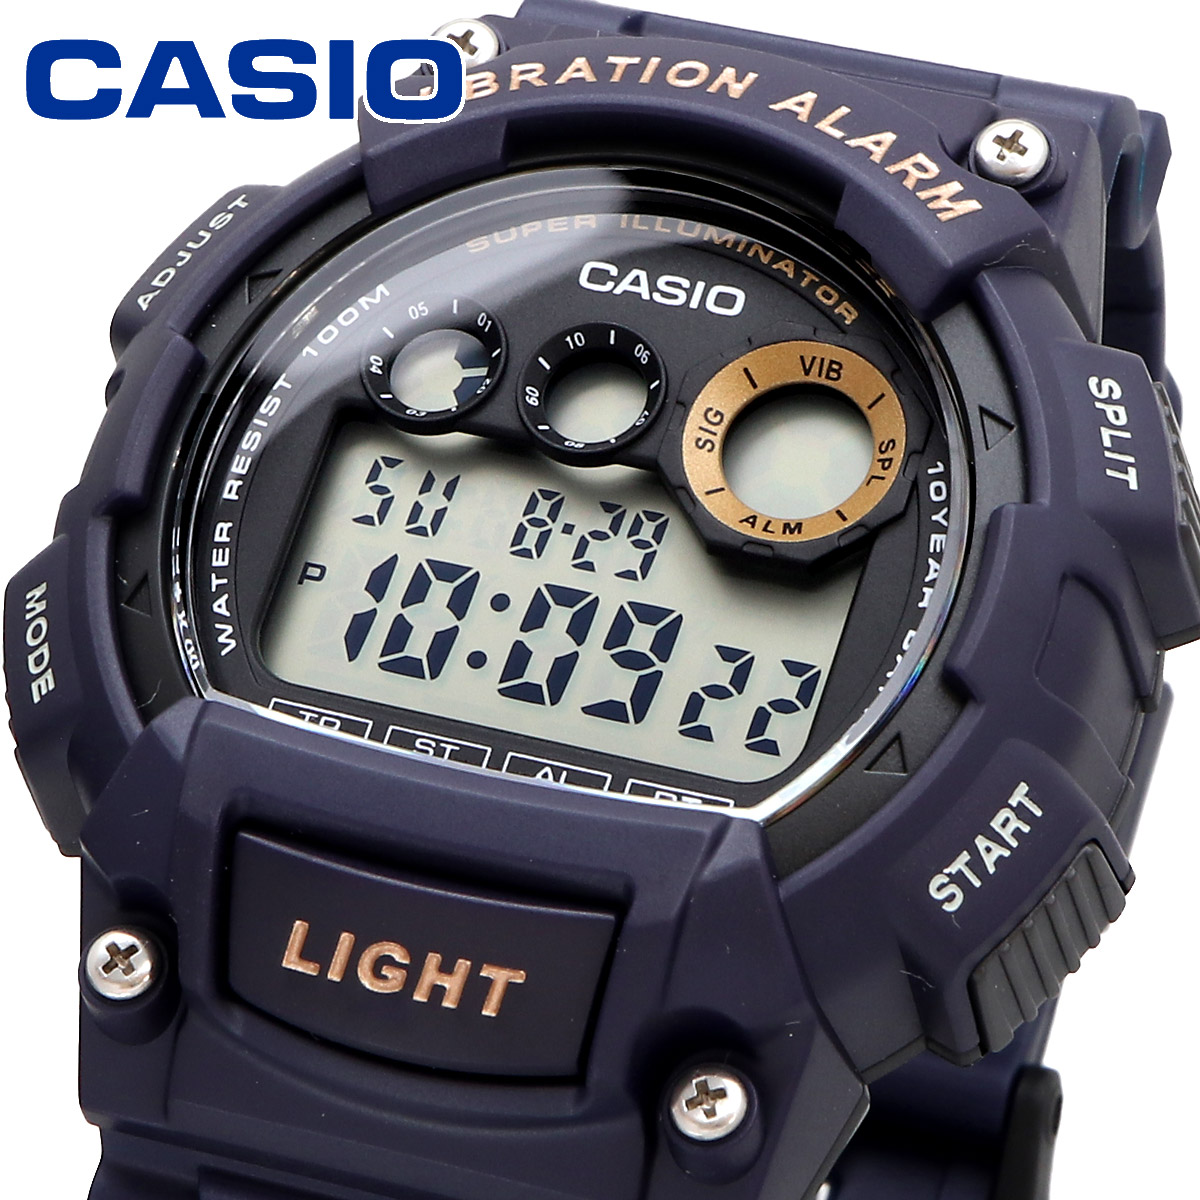 CASIO カシオ 腕時計 メンズ チープカシオ チプカシ   海外モデル バイブレーション機能  W-735H-2AV